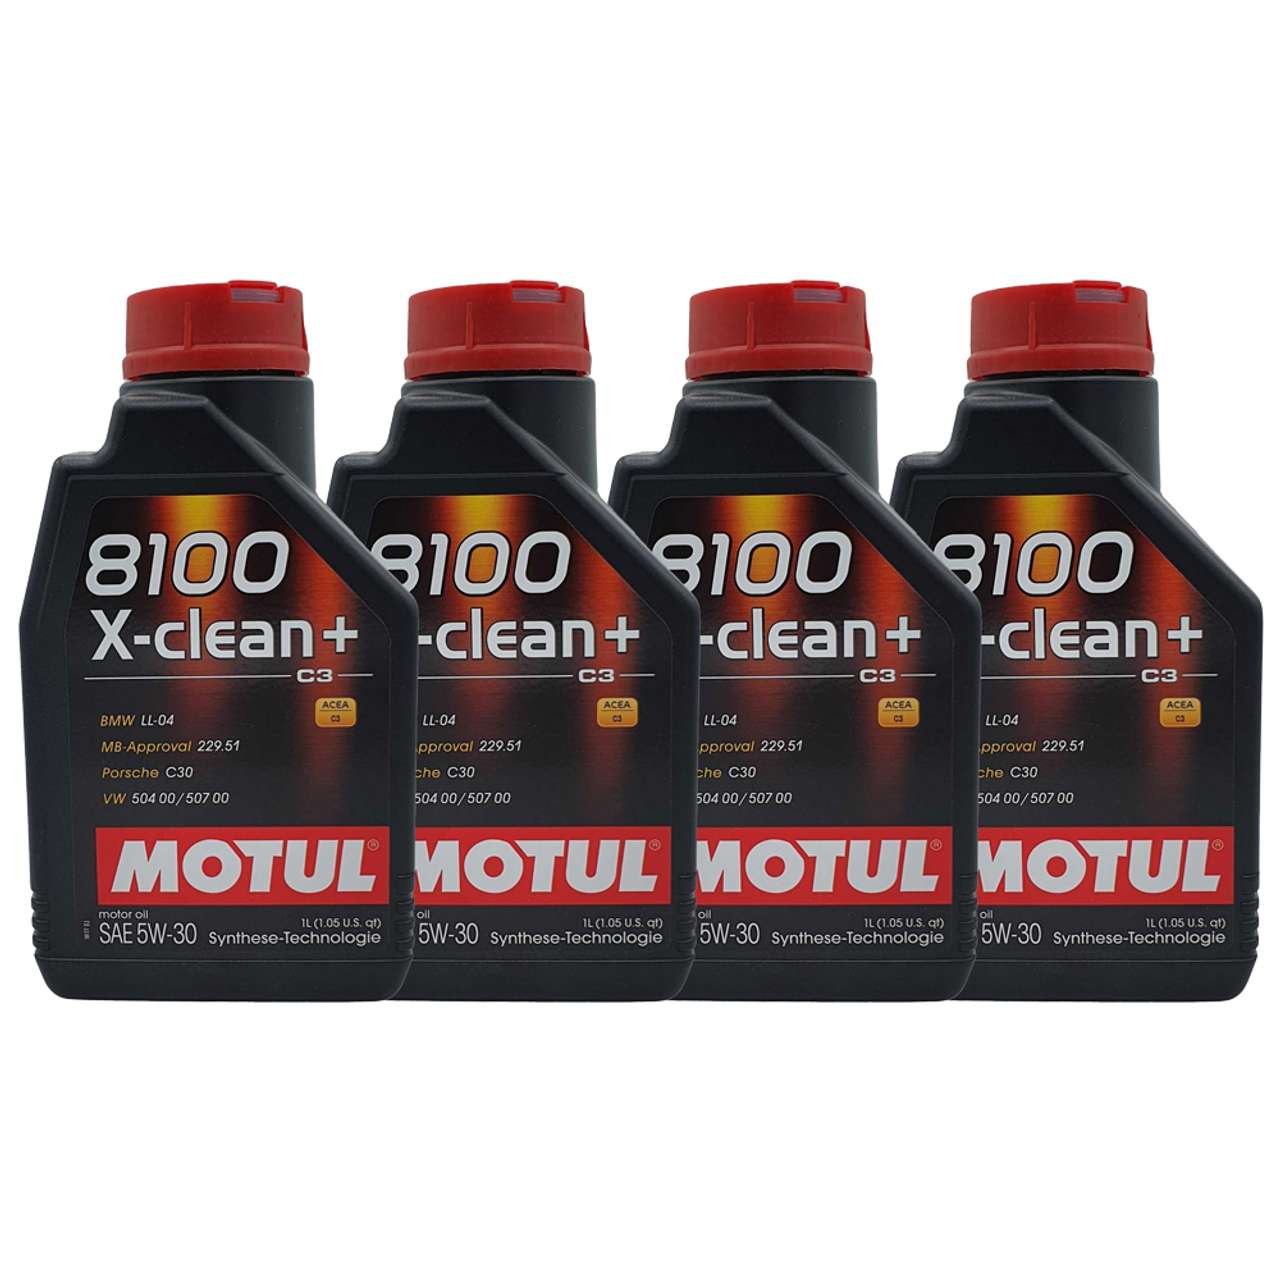 Motul 8100 X-clean+ 5W-30 4x1 Liter